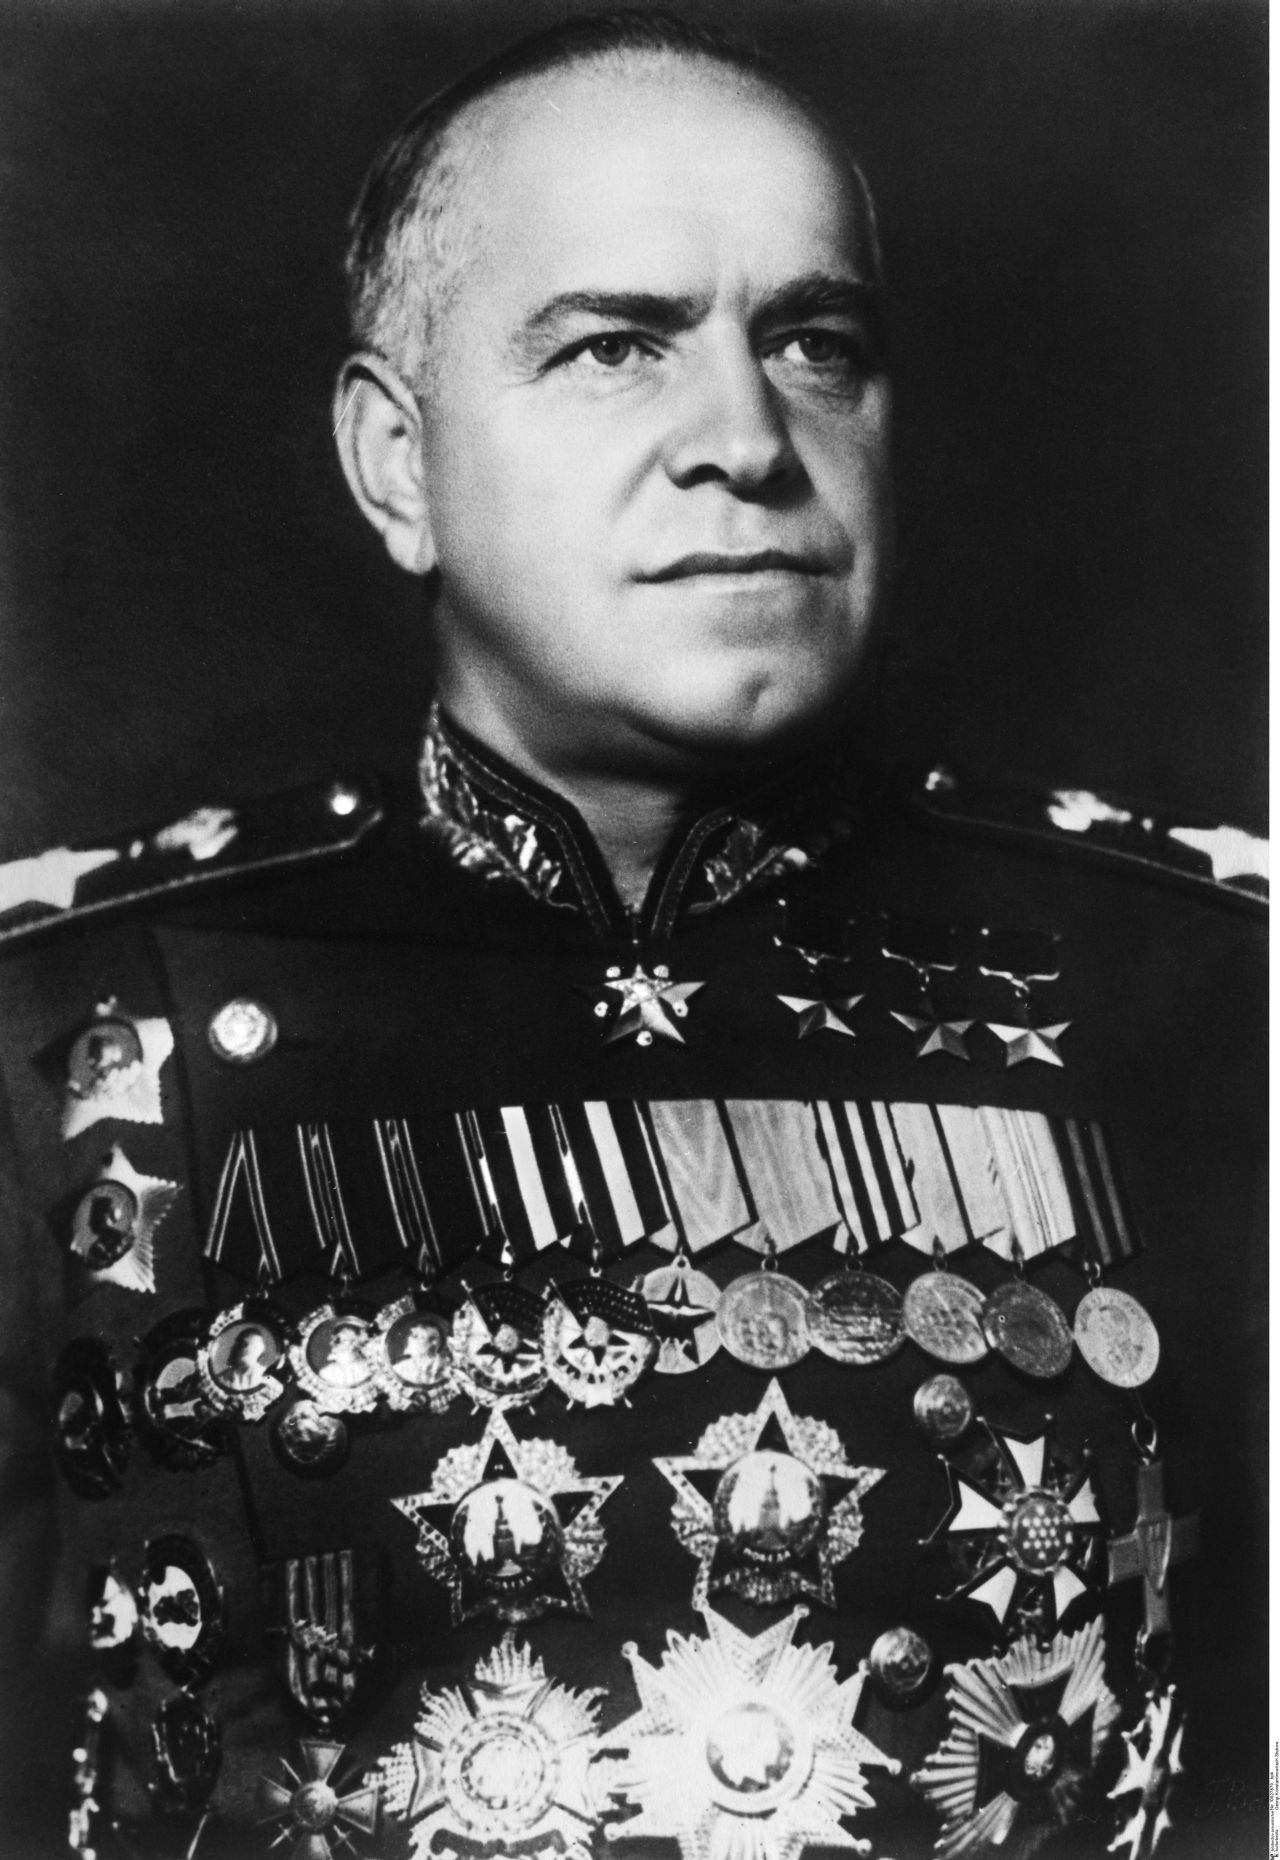 Porträtfoto von Georgij K. Schukow, Vorsitzender der sowjetischen Militäradministration, Juli/August 1945